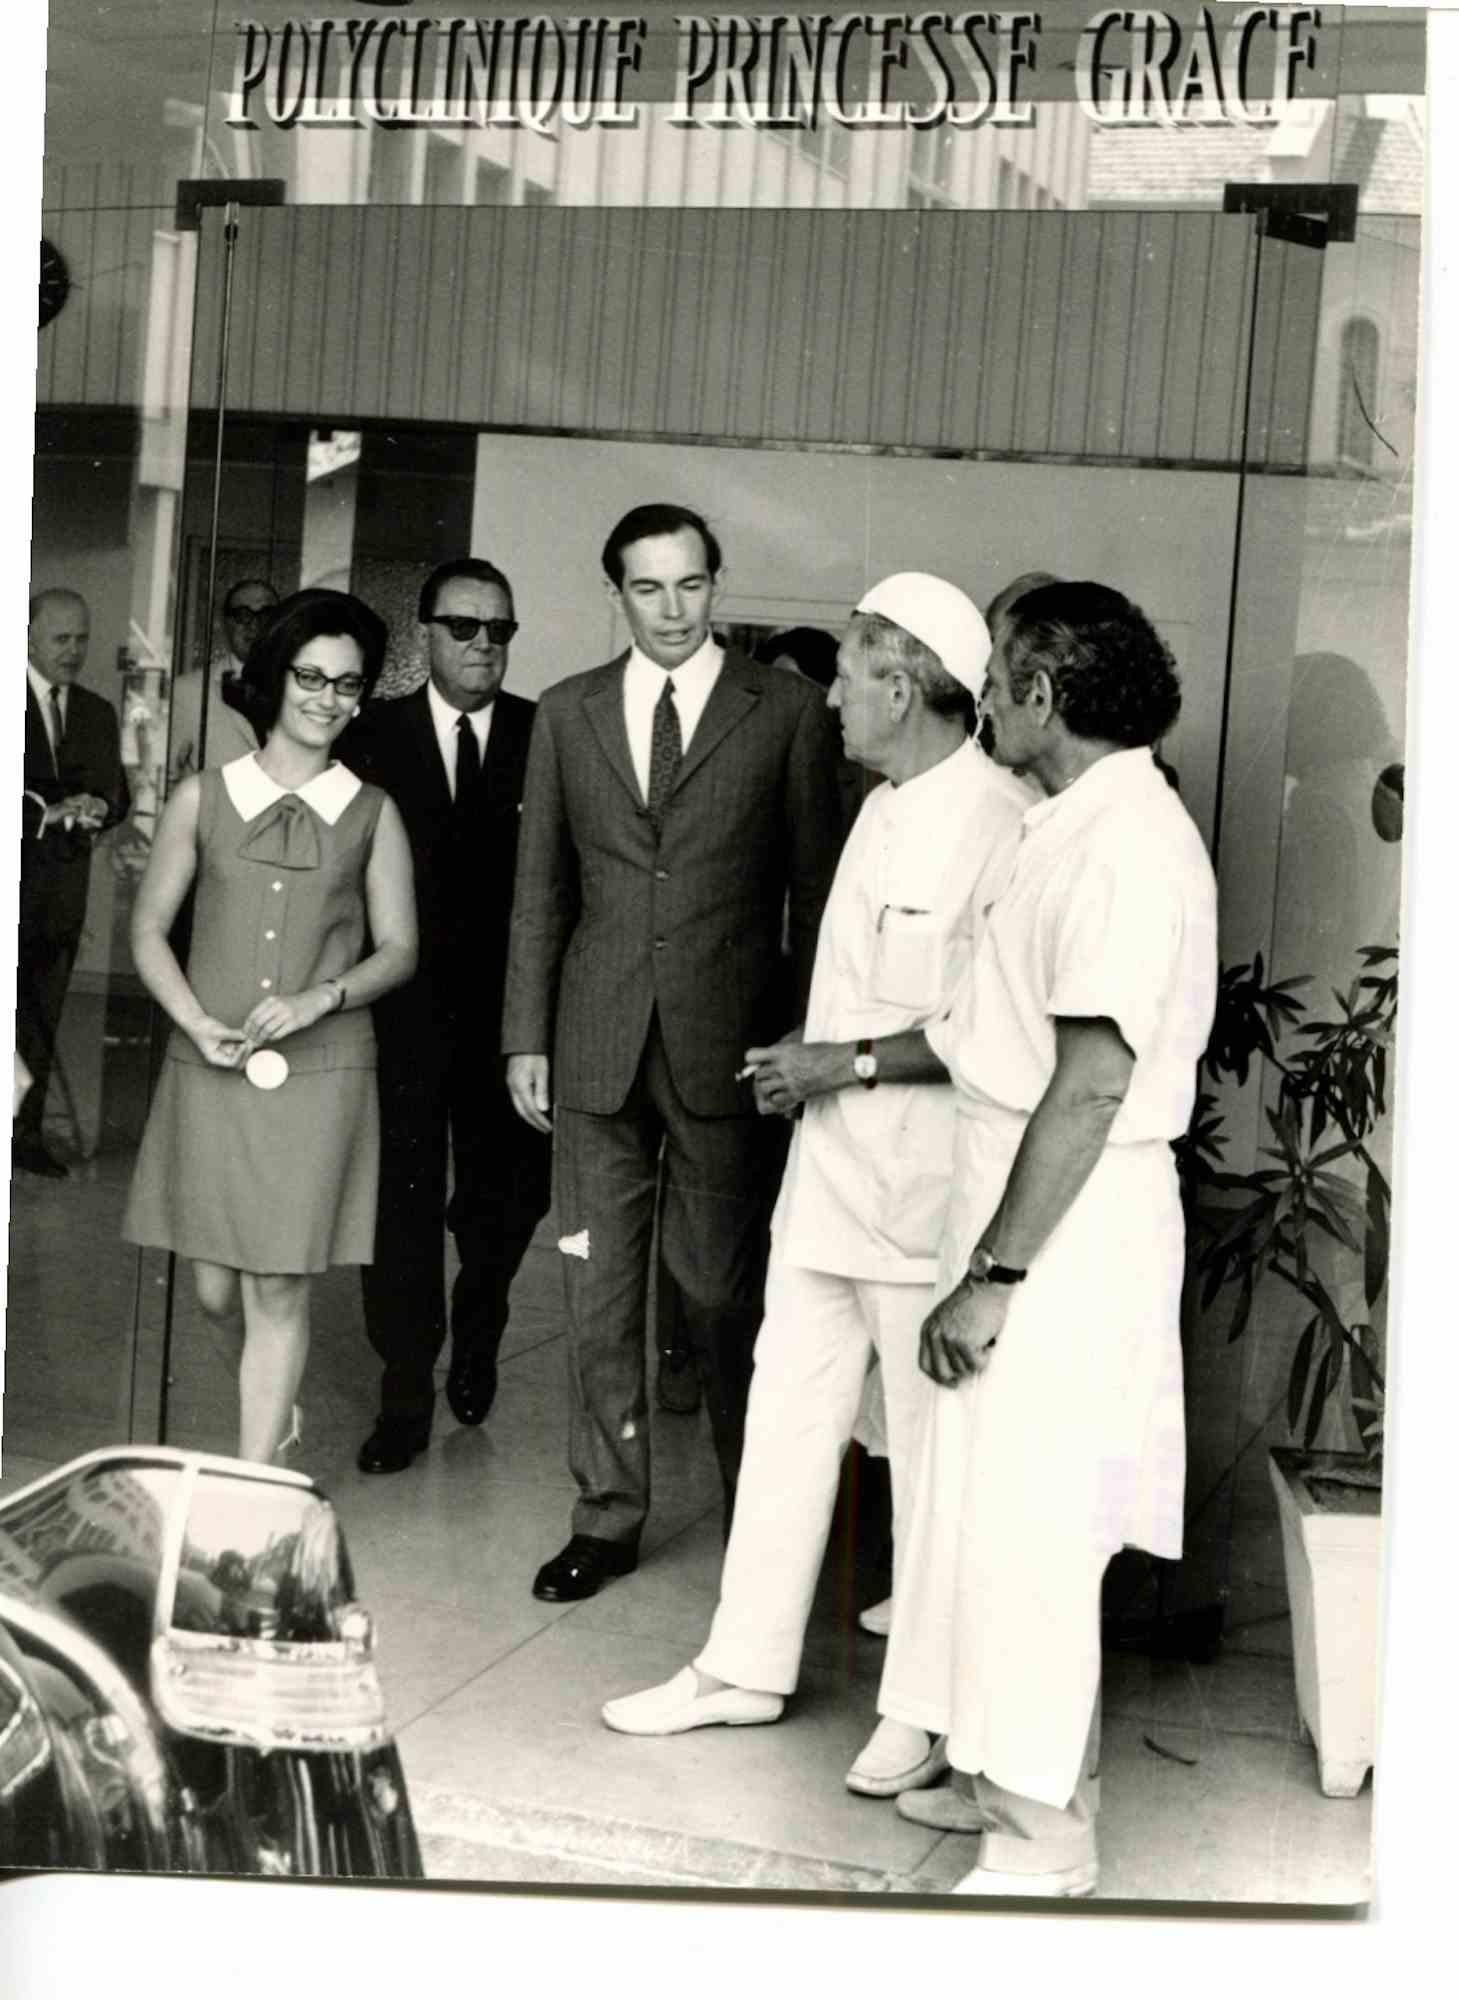 Unknown Portrait Photograph – Professor Barnard besucht die Poliklinik Princesse Grace in Montecarlo - 1960er Jahre